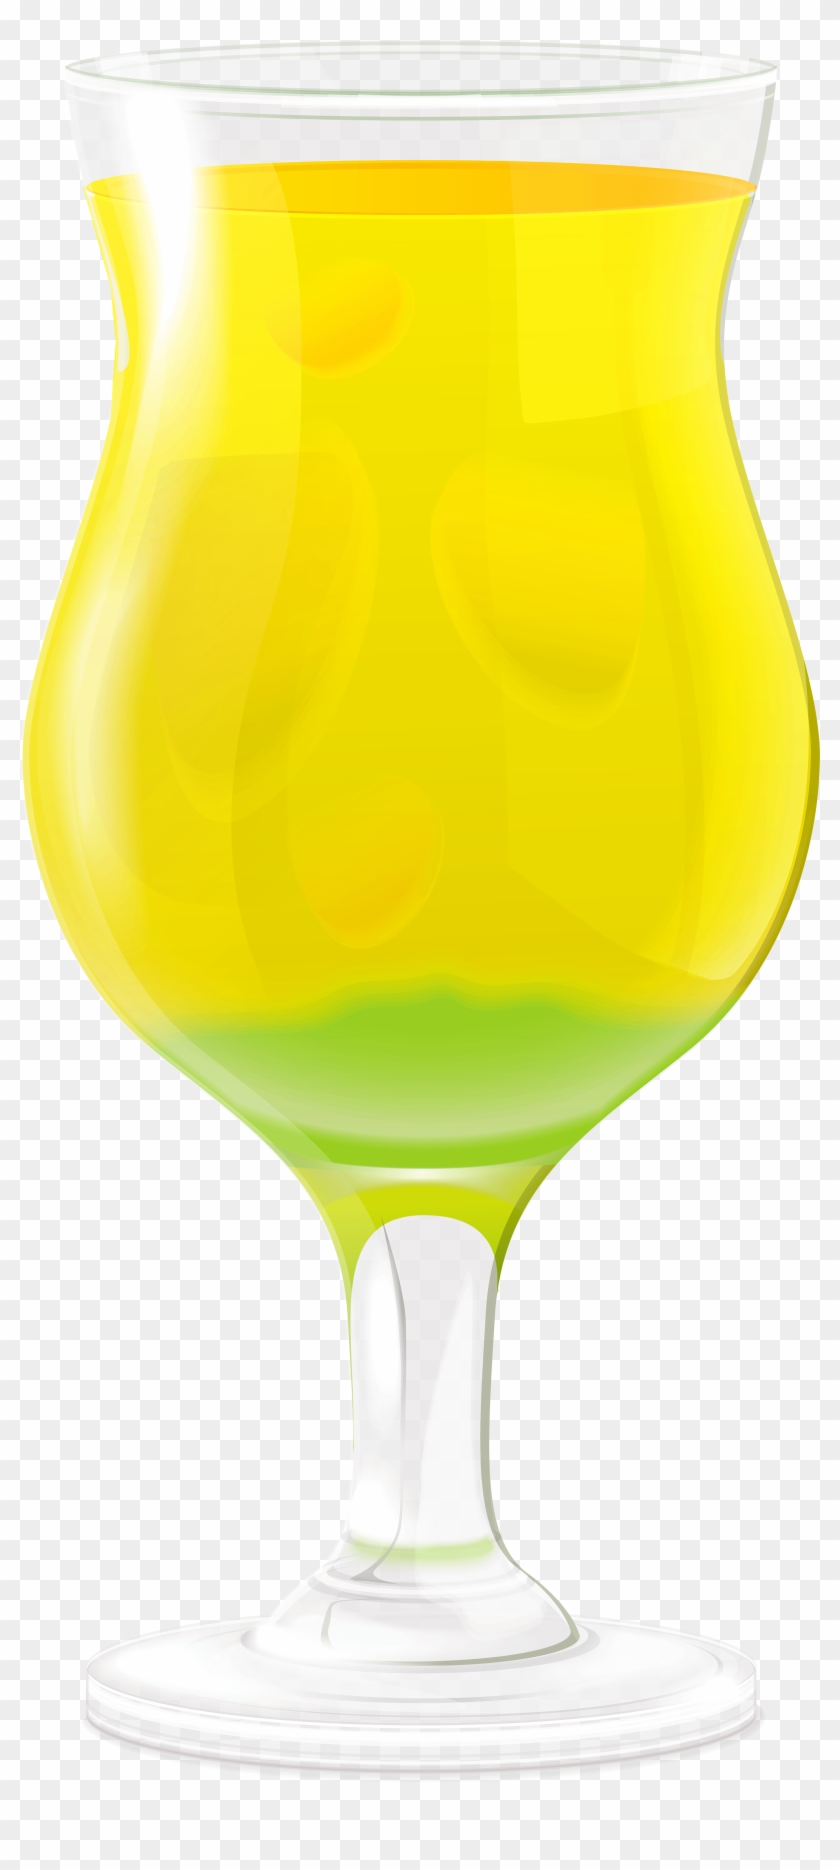 Orange Juice Beer Wine Glass - Orange Juice Beer Wine Glass #330829